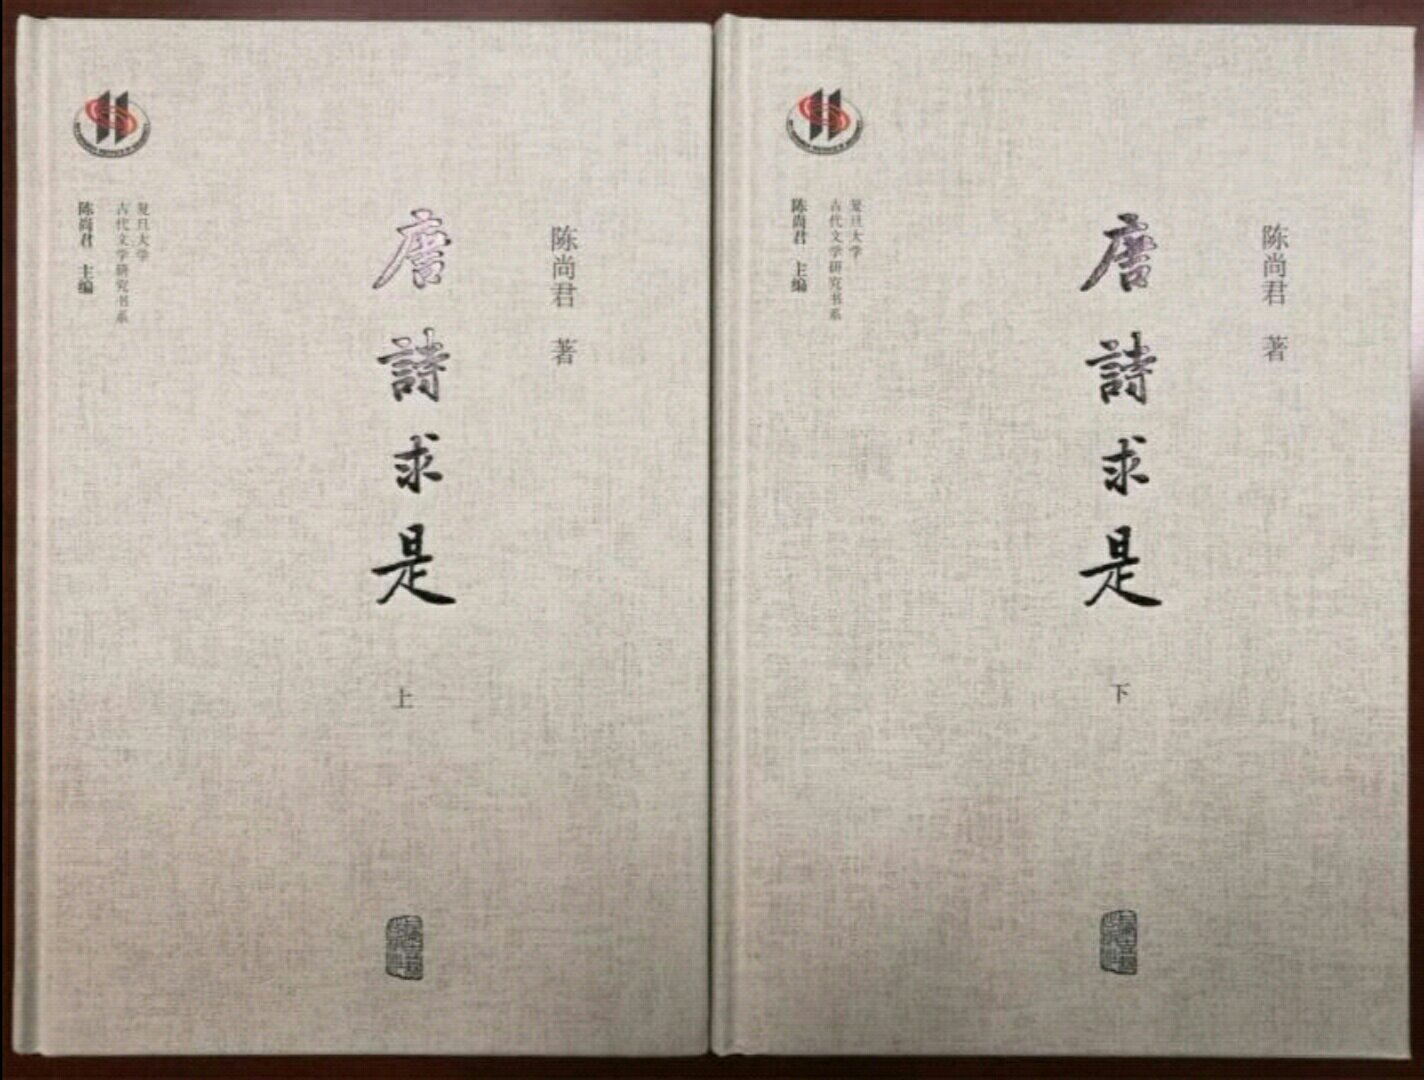 陈先生是唐诗学研究的权威，这两册《唐诗求是》是其力作。